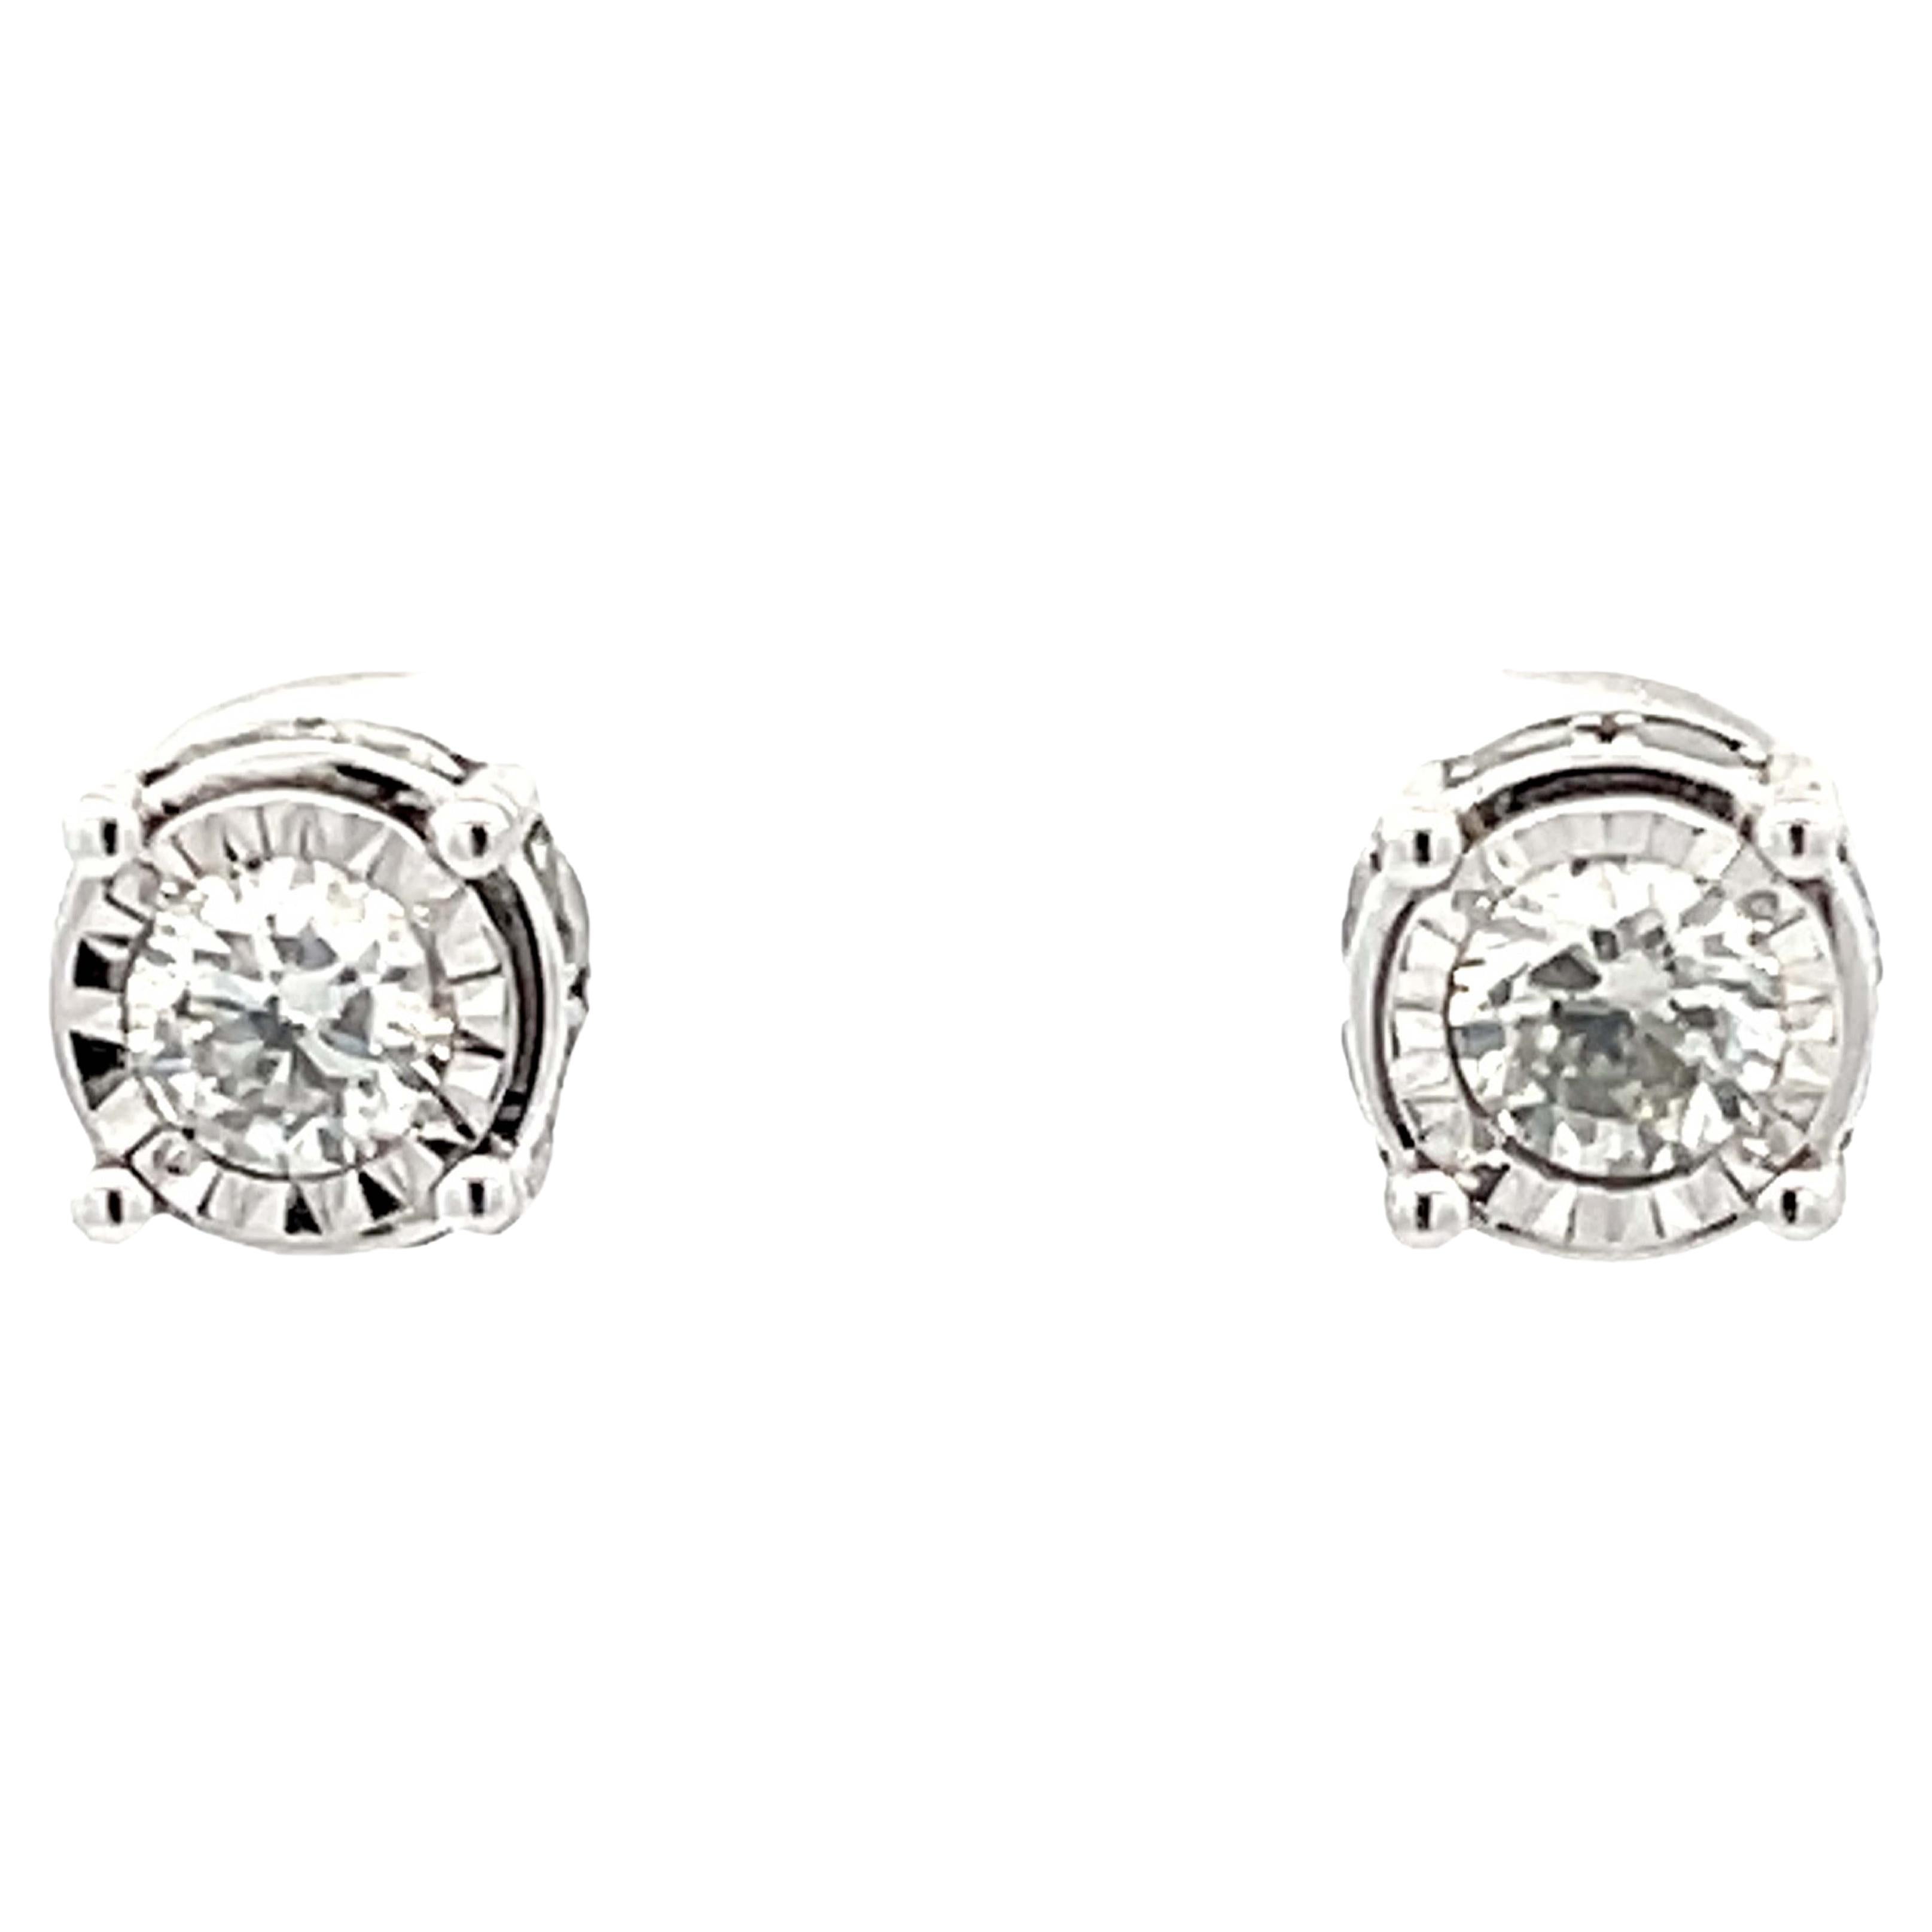 Fluted Bezel Diamond Stud Earrings in 14k White Gold